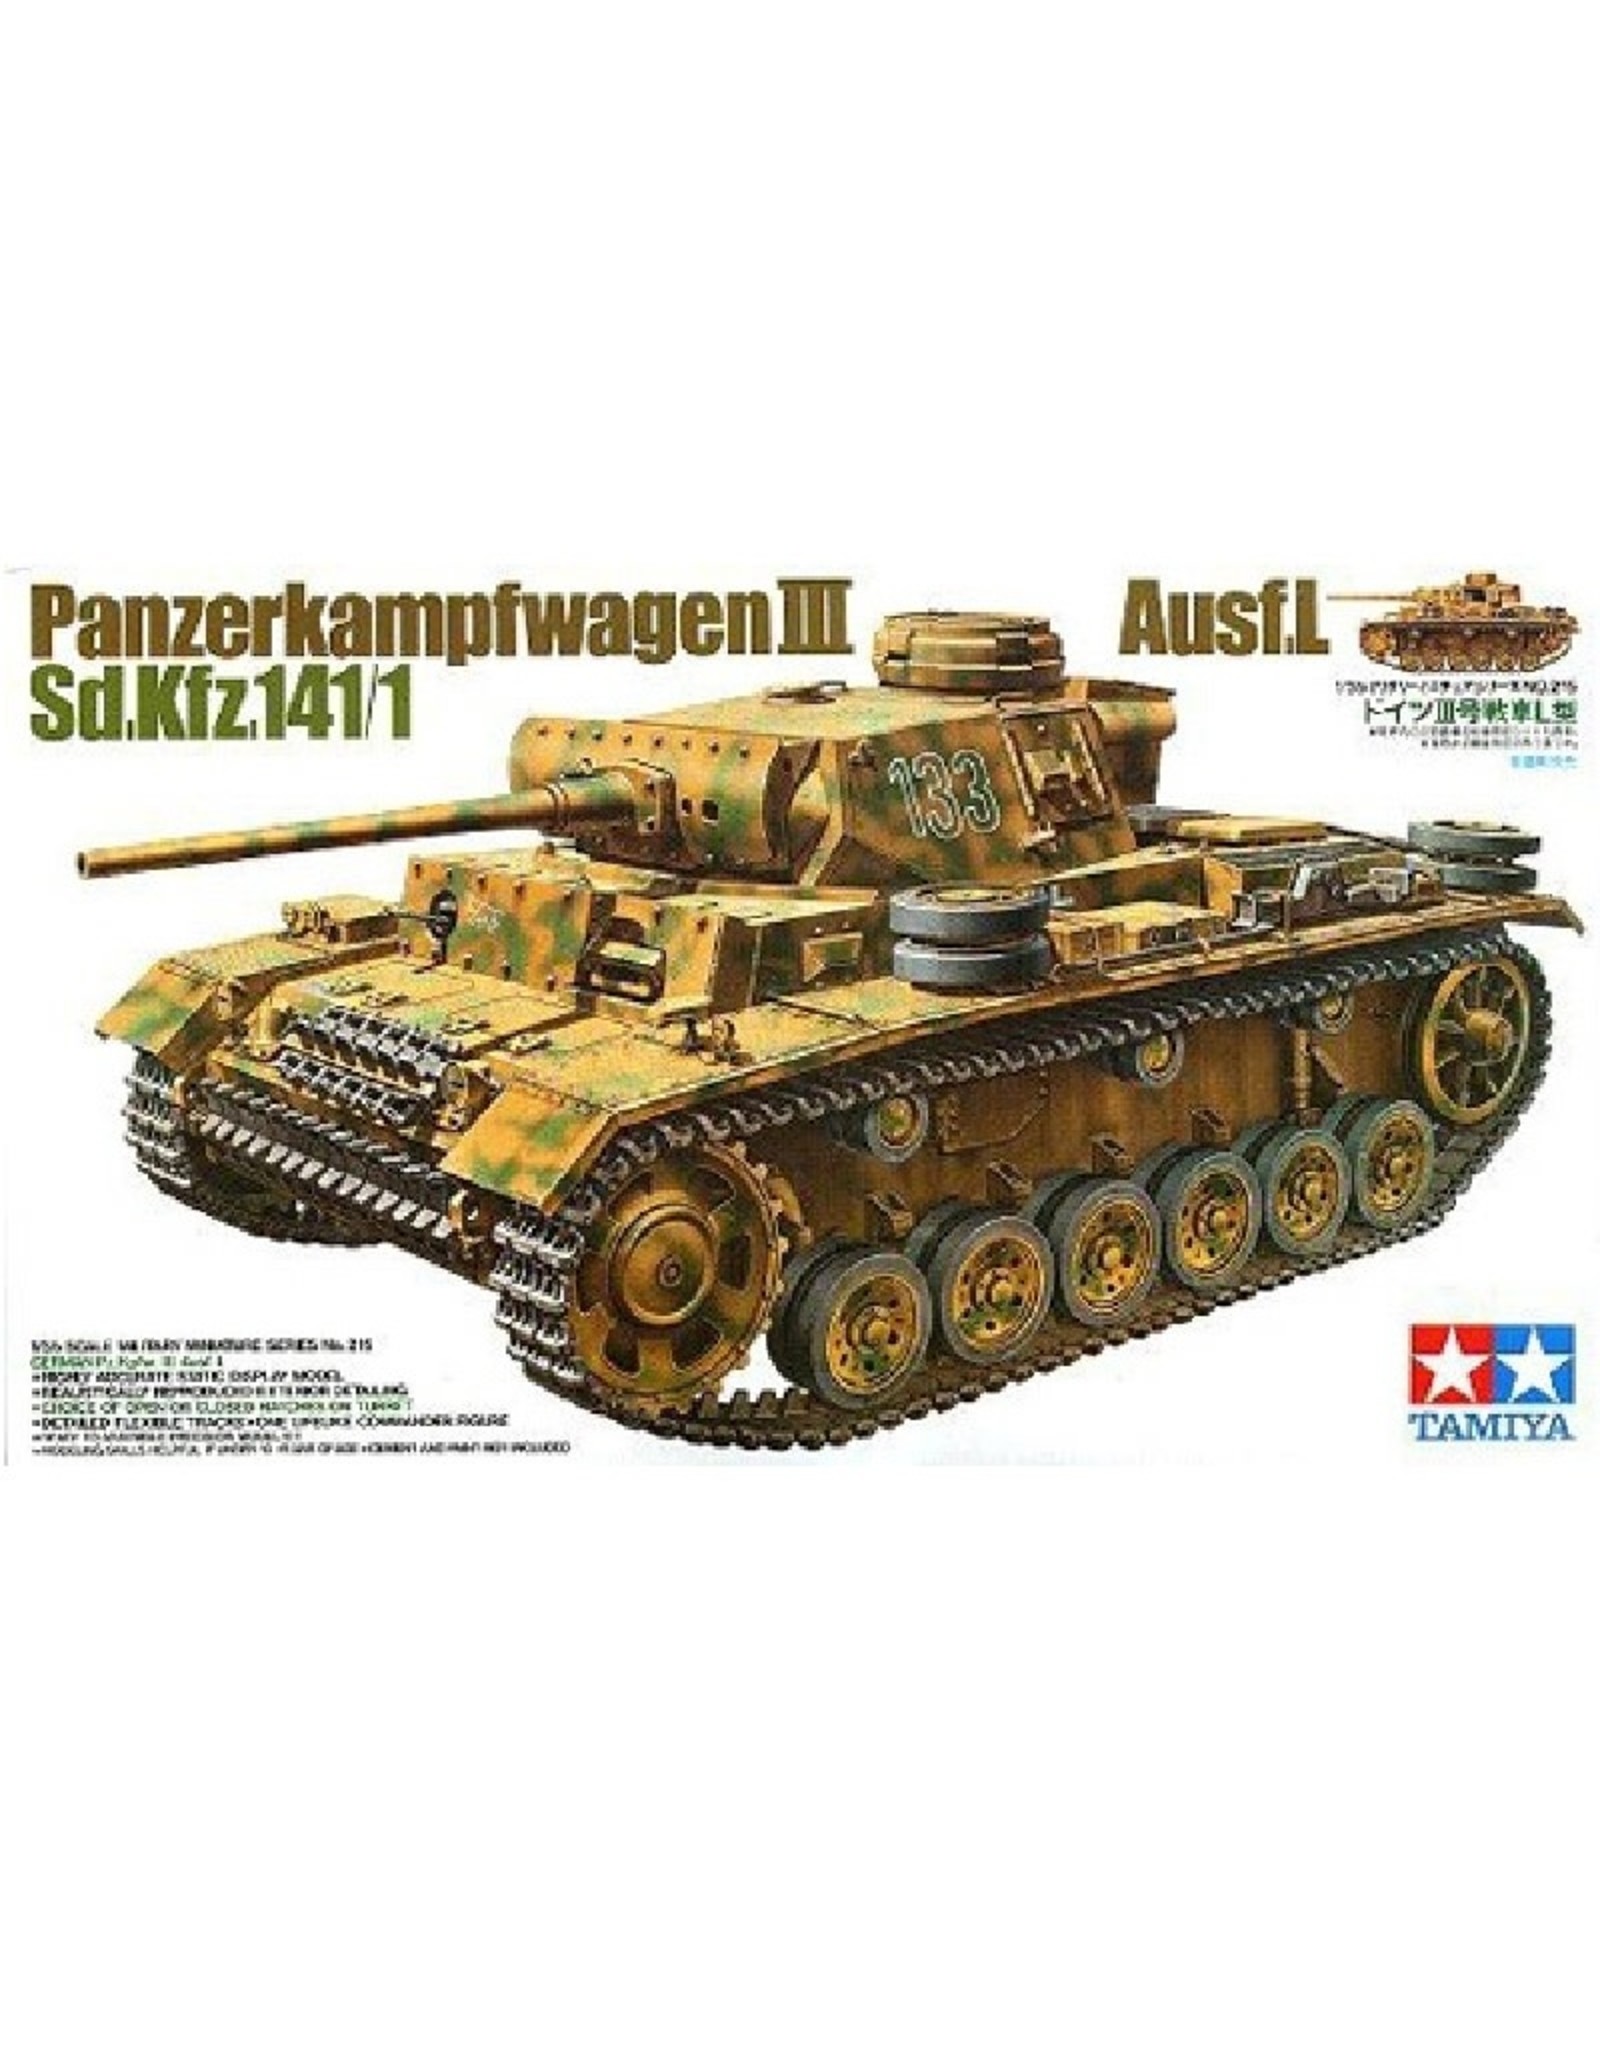 Panzerkampfwagen III Ausf.L Sd.Kfz. 141/1 (1:35)